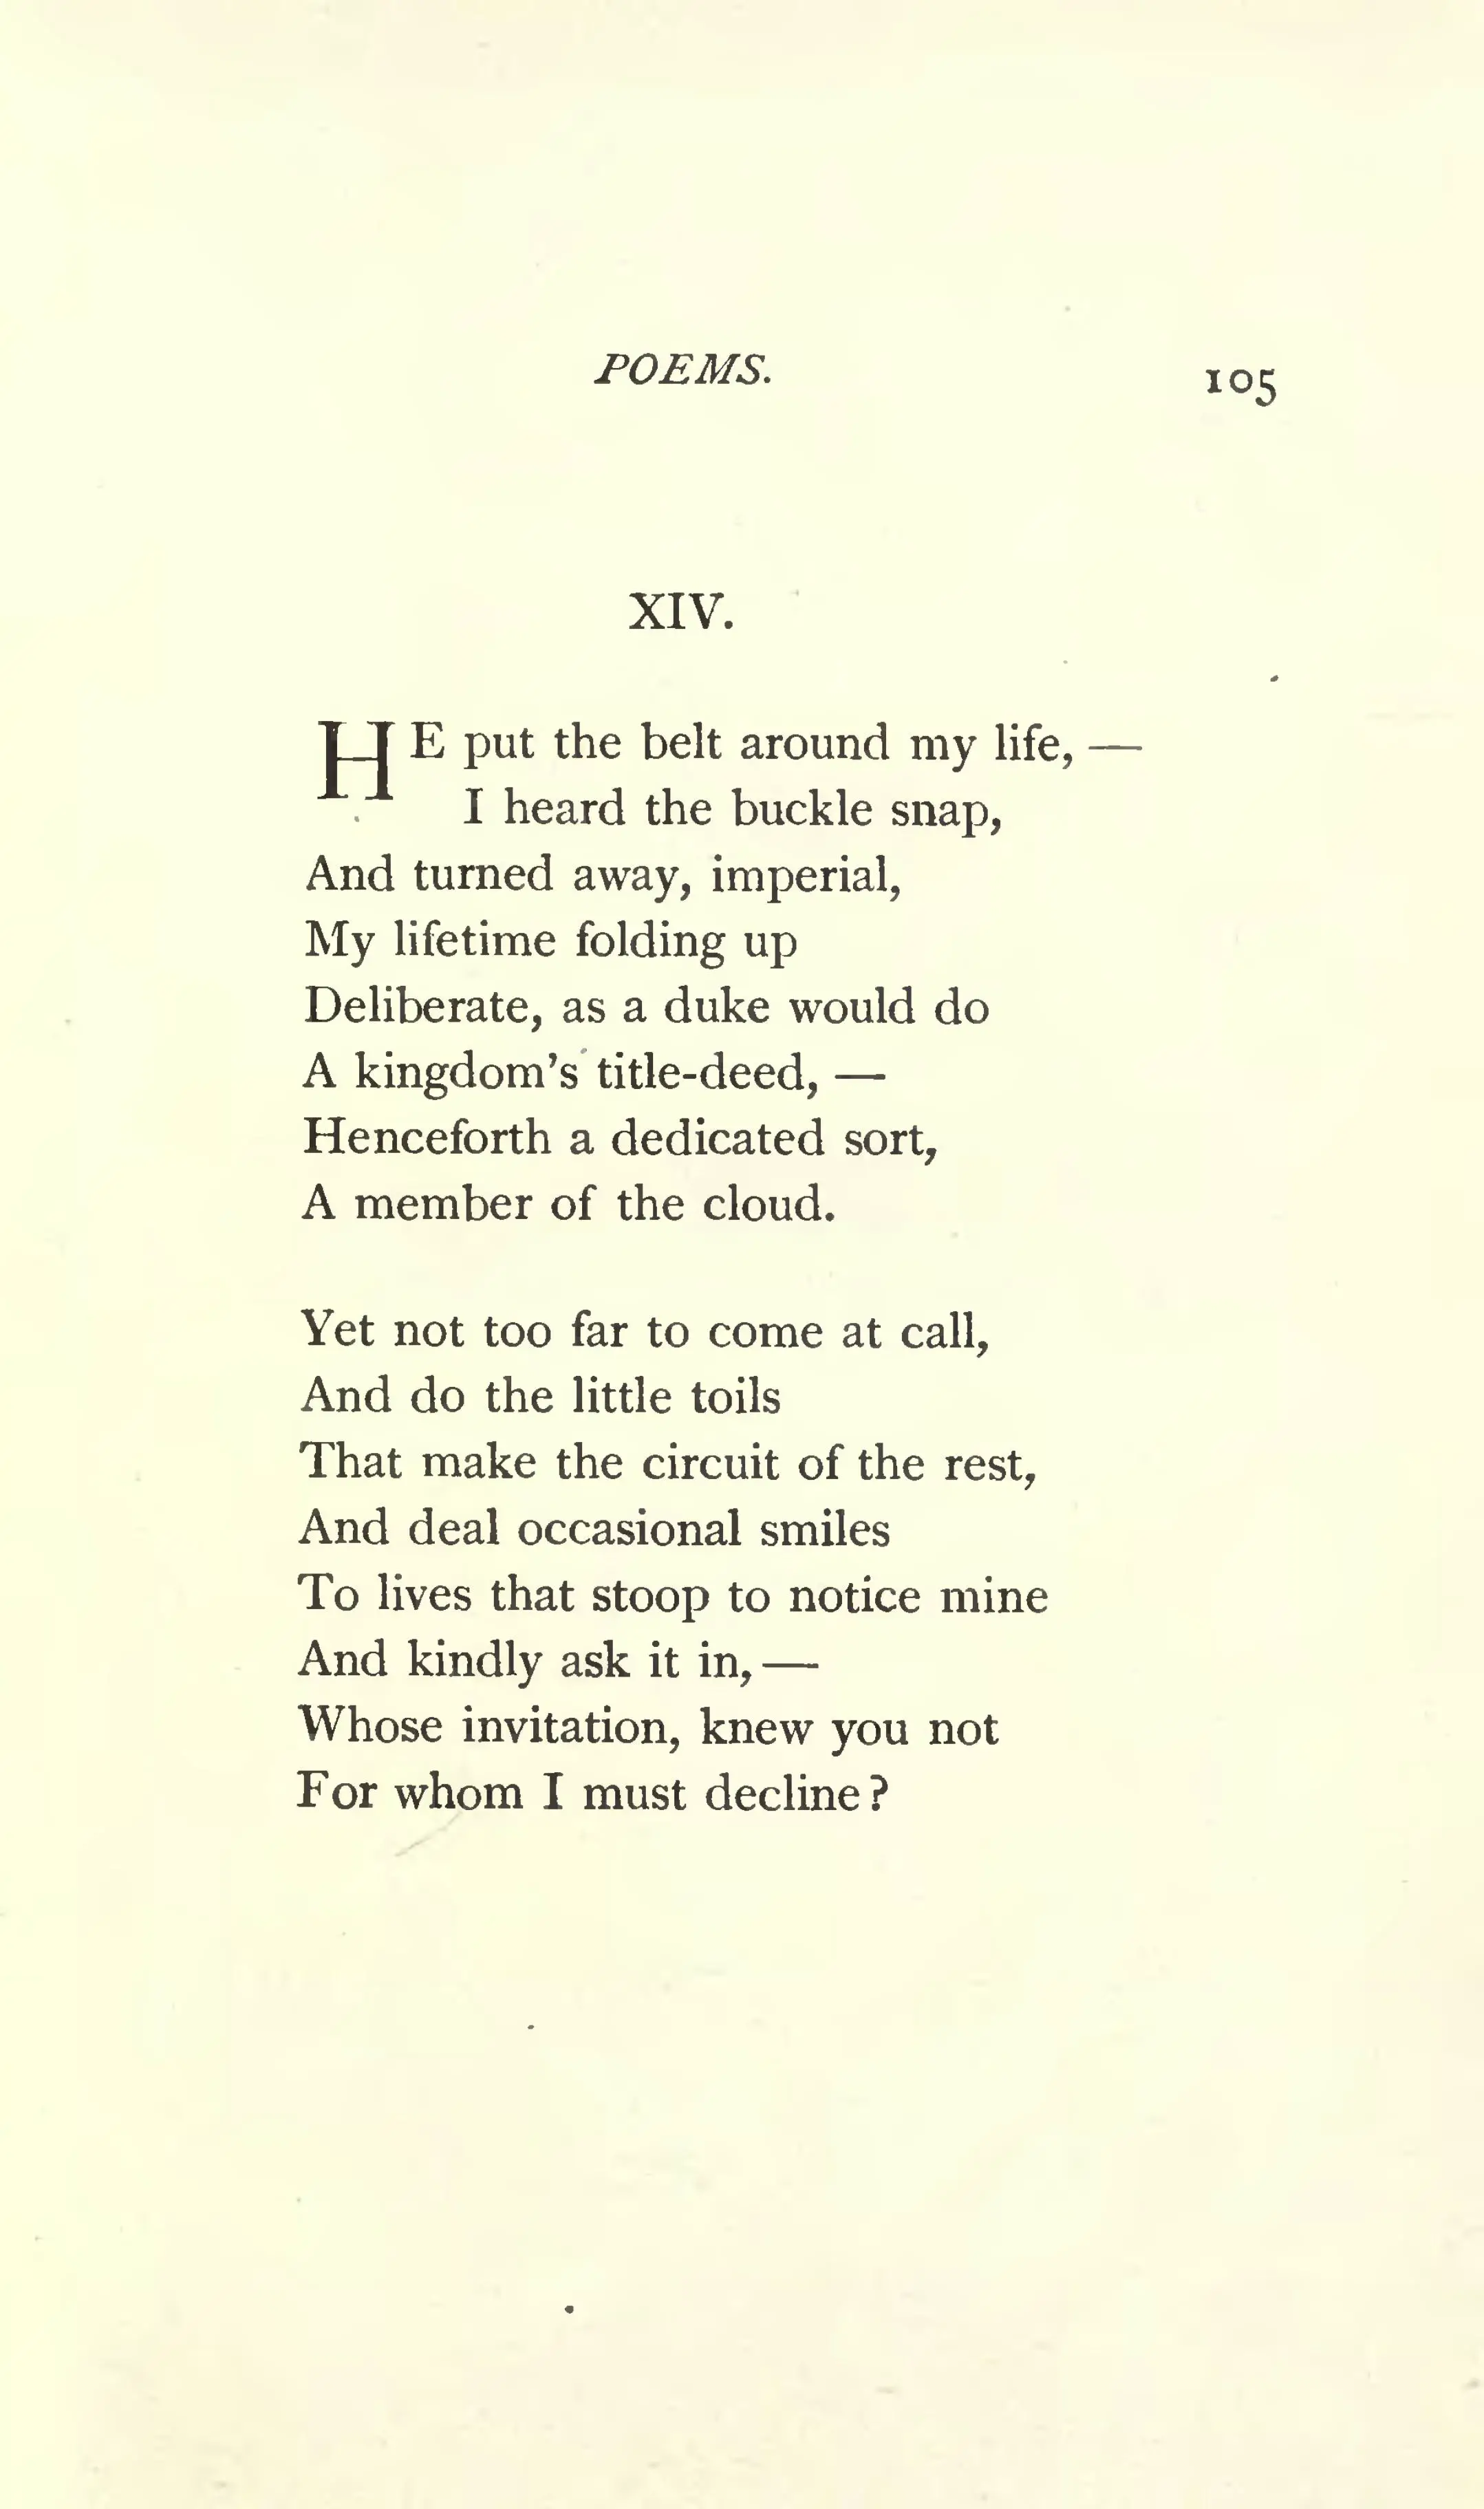 Emily Dickinson s second series 1891 vu 113